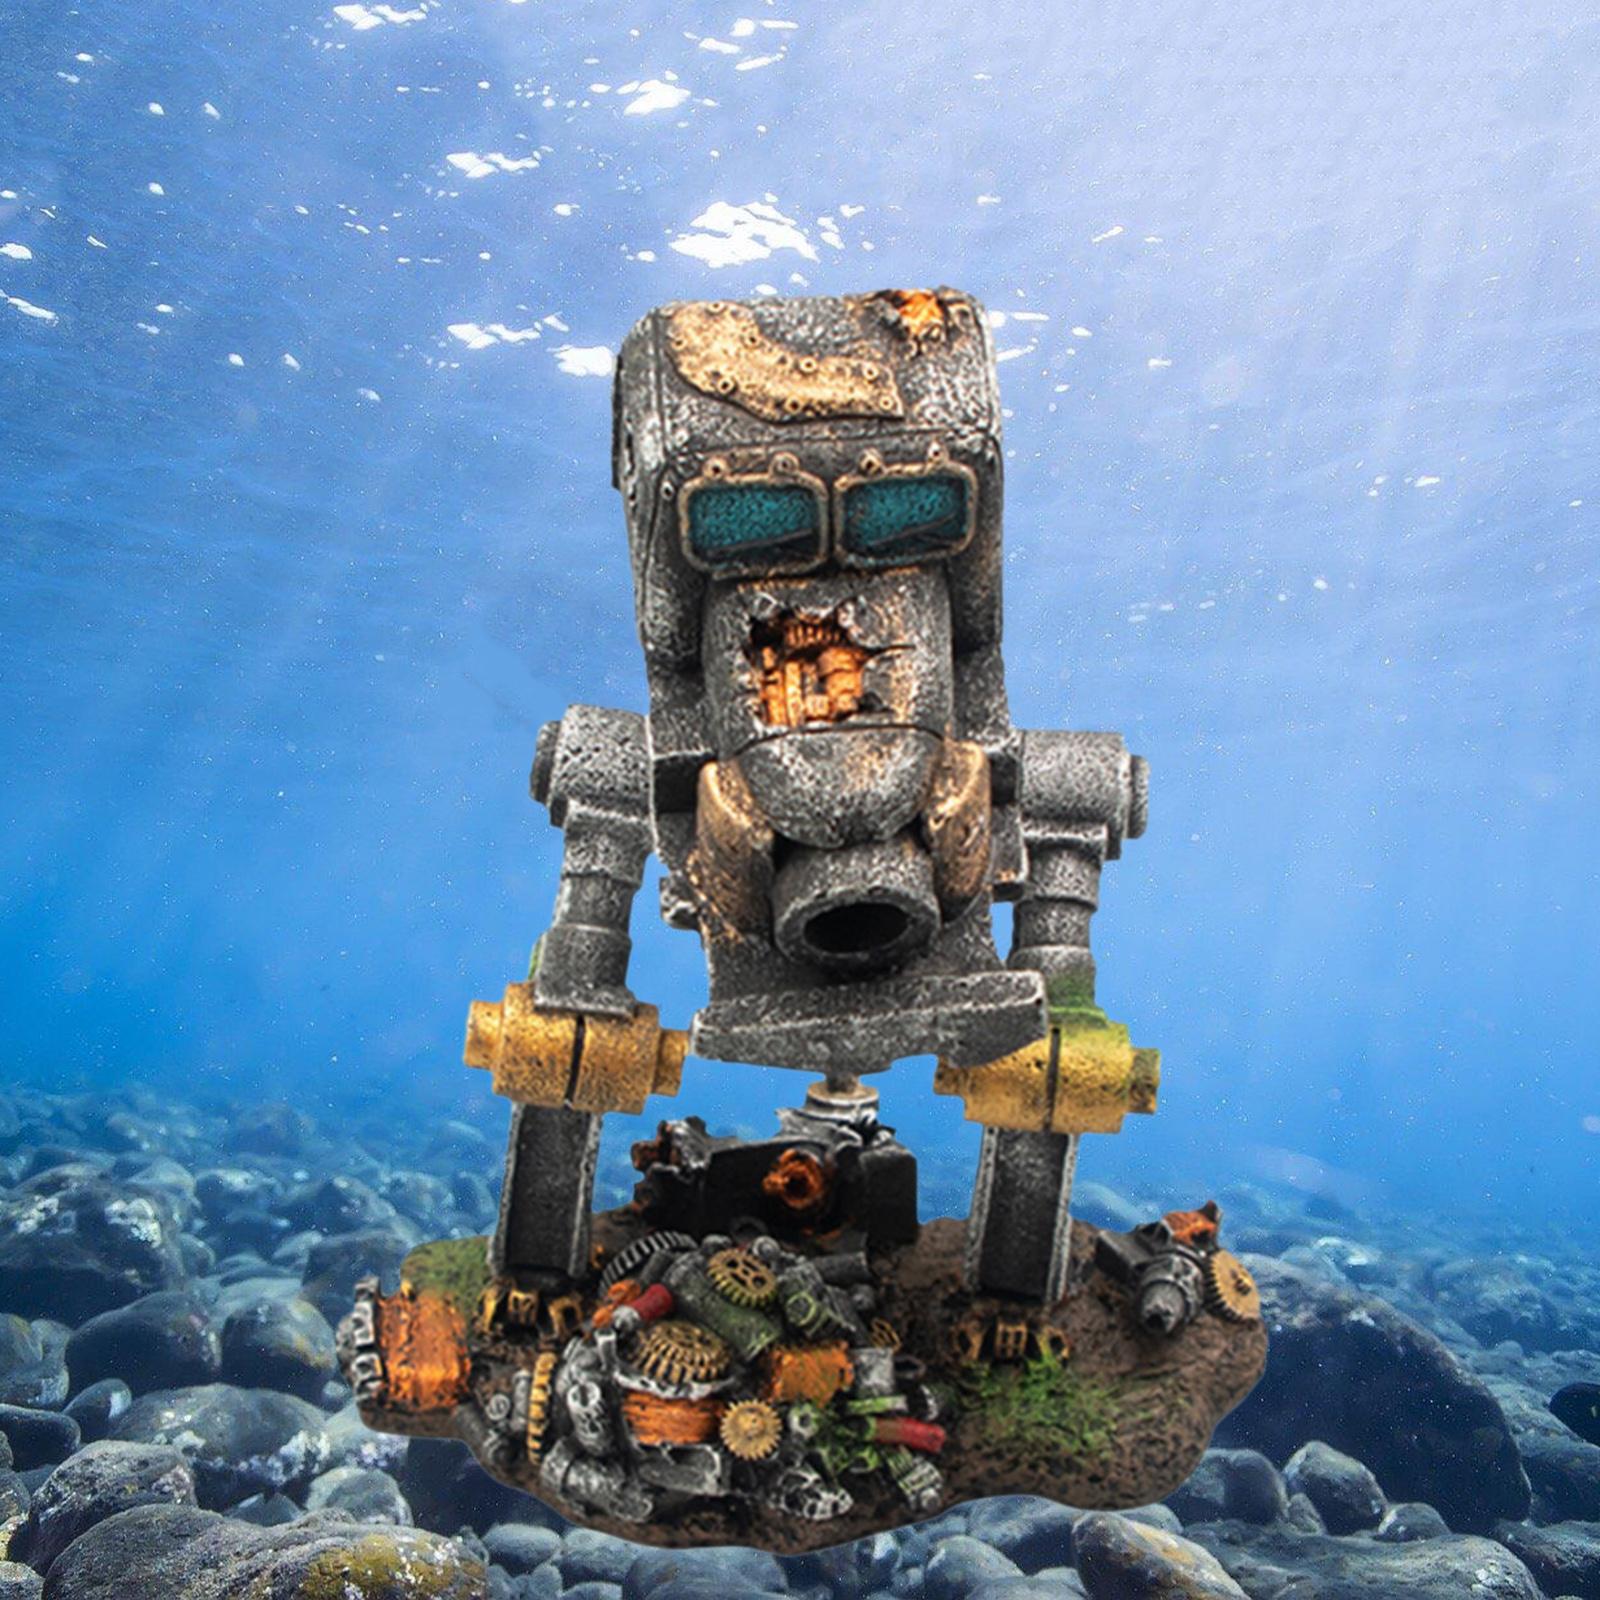 Aquarium Decorations Robot Car Cave Fish Tank Ornament Craft Backgrounds